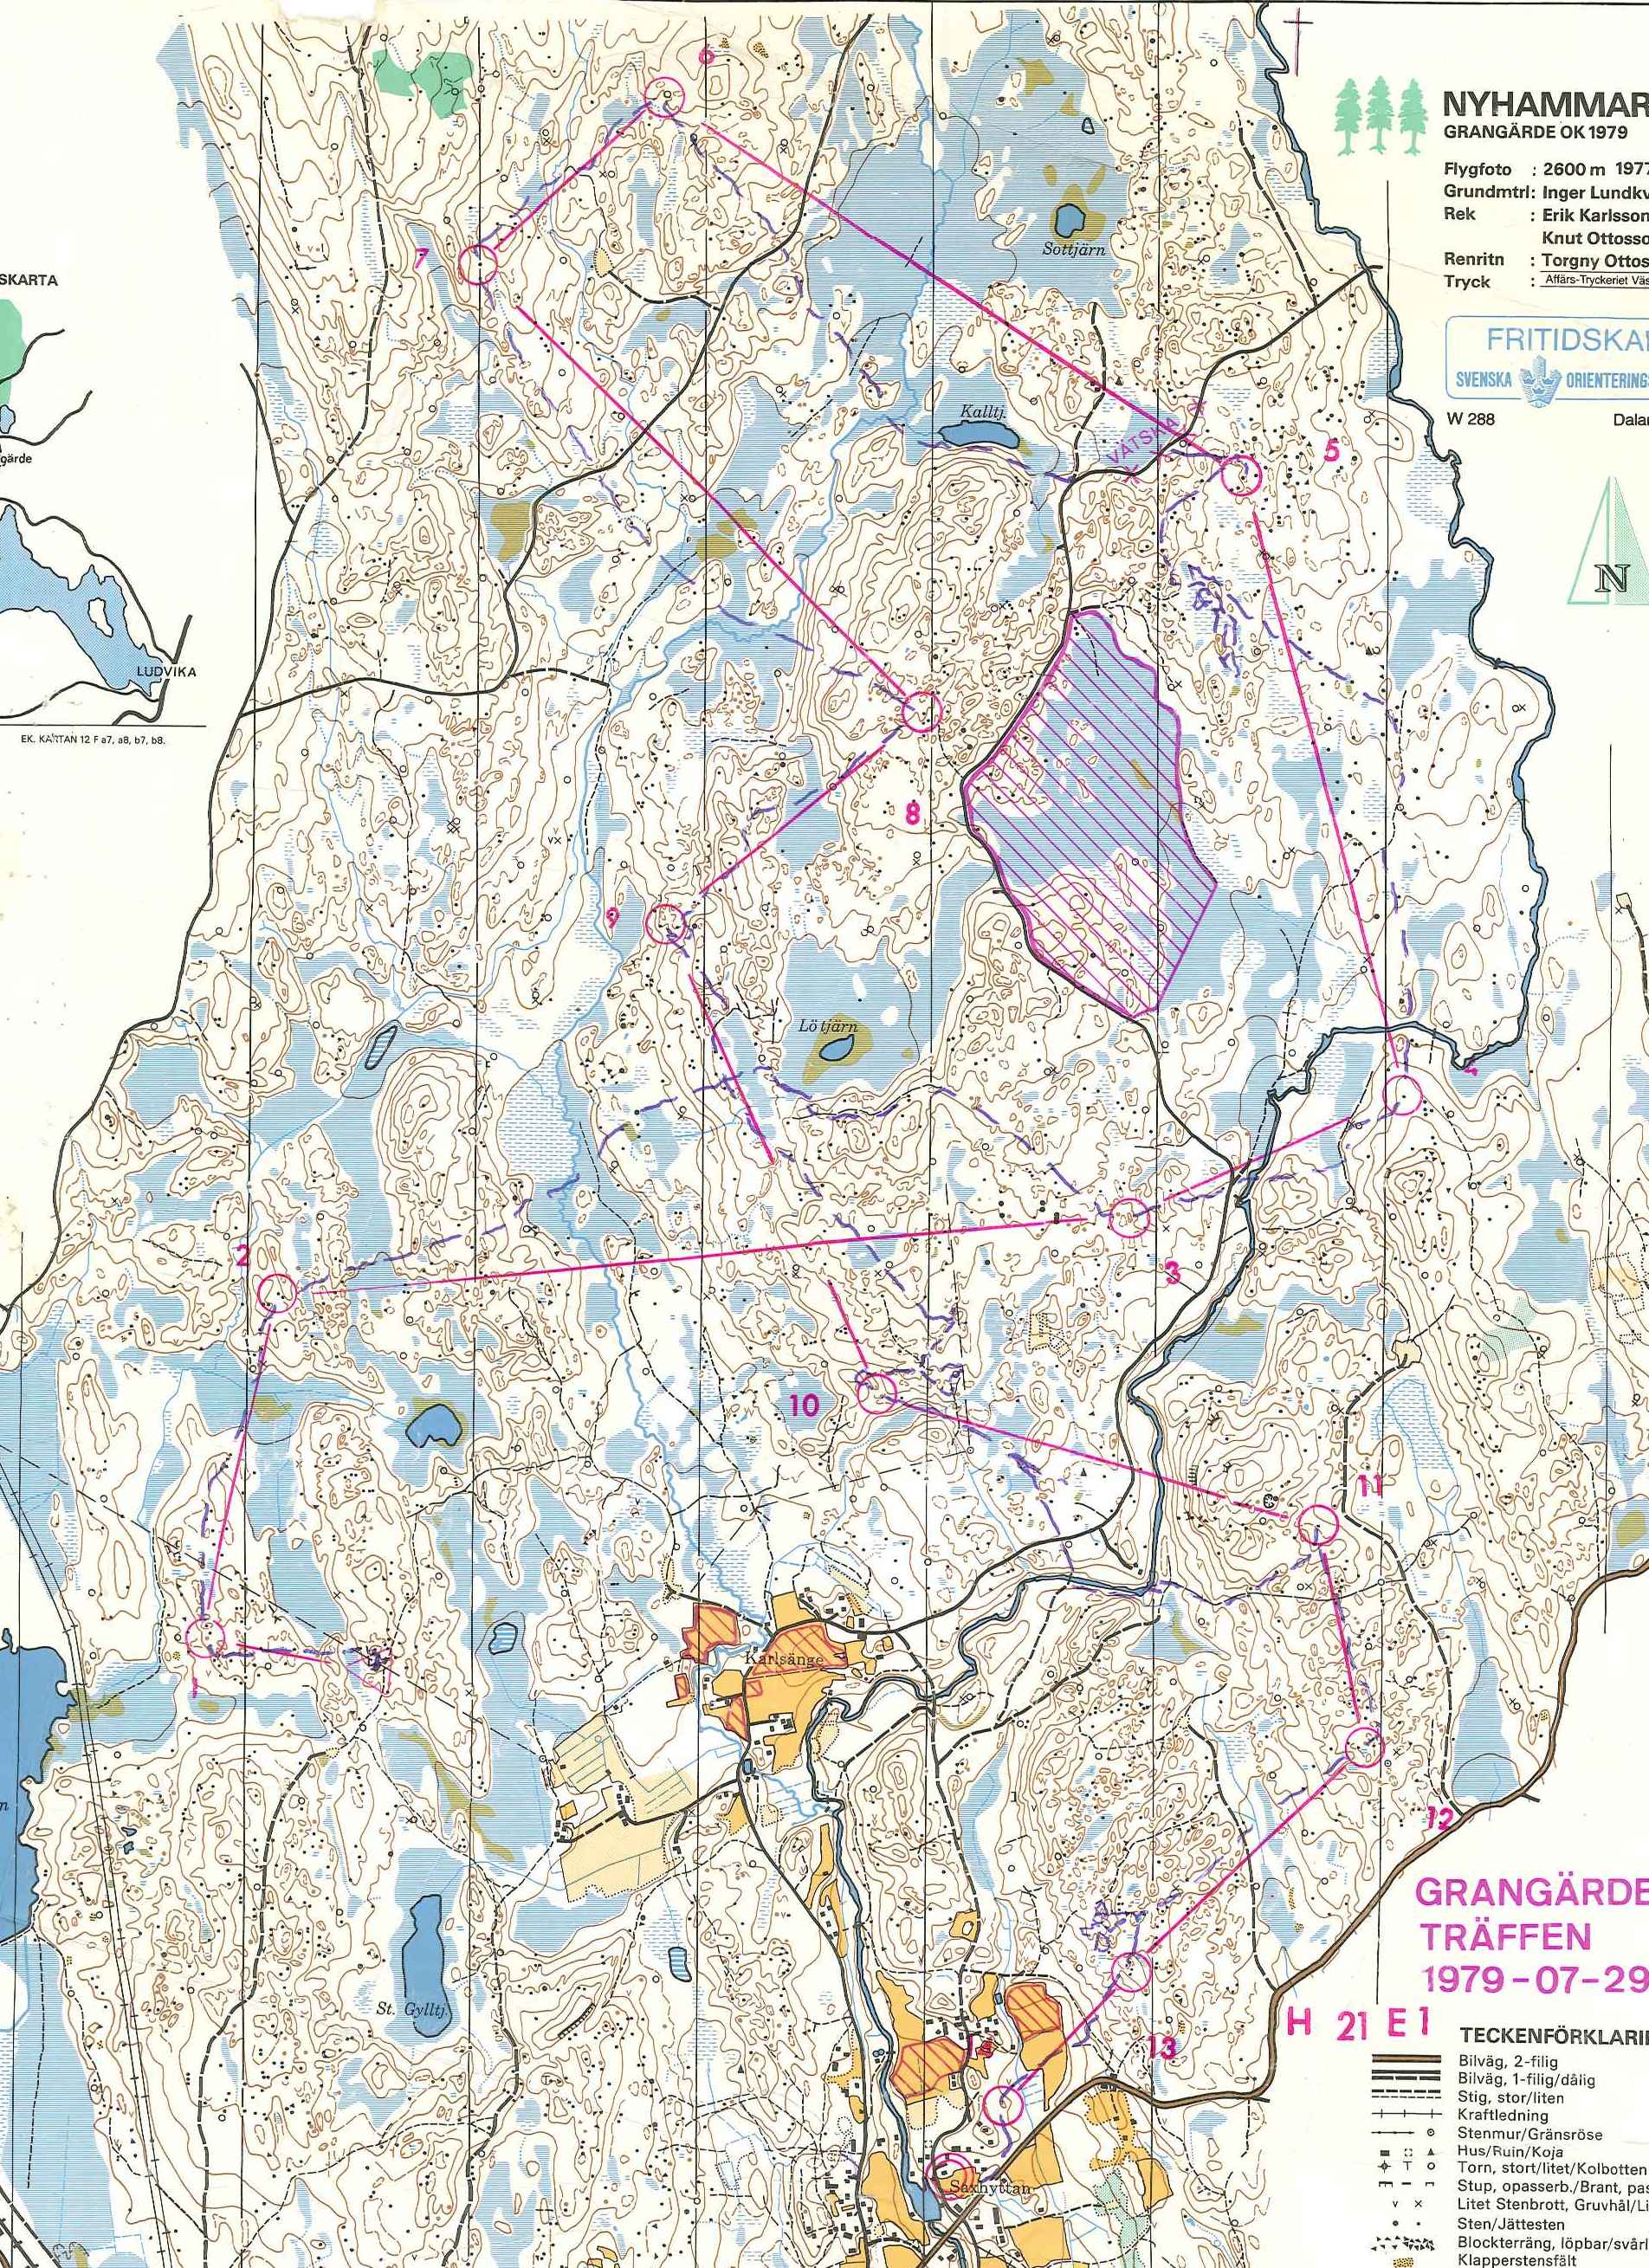 Grangärde (29-07-1979)